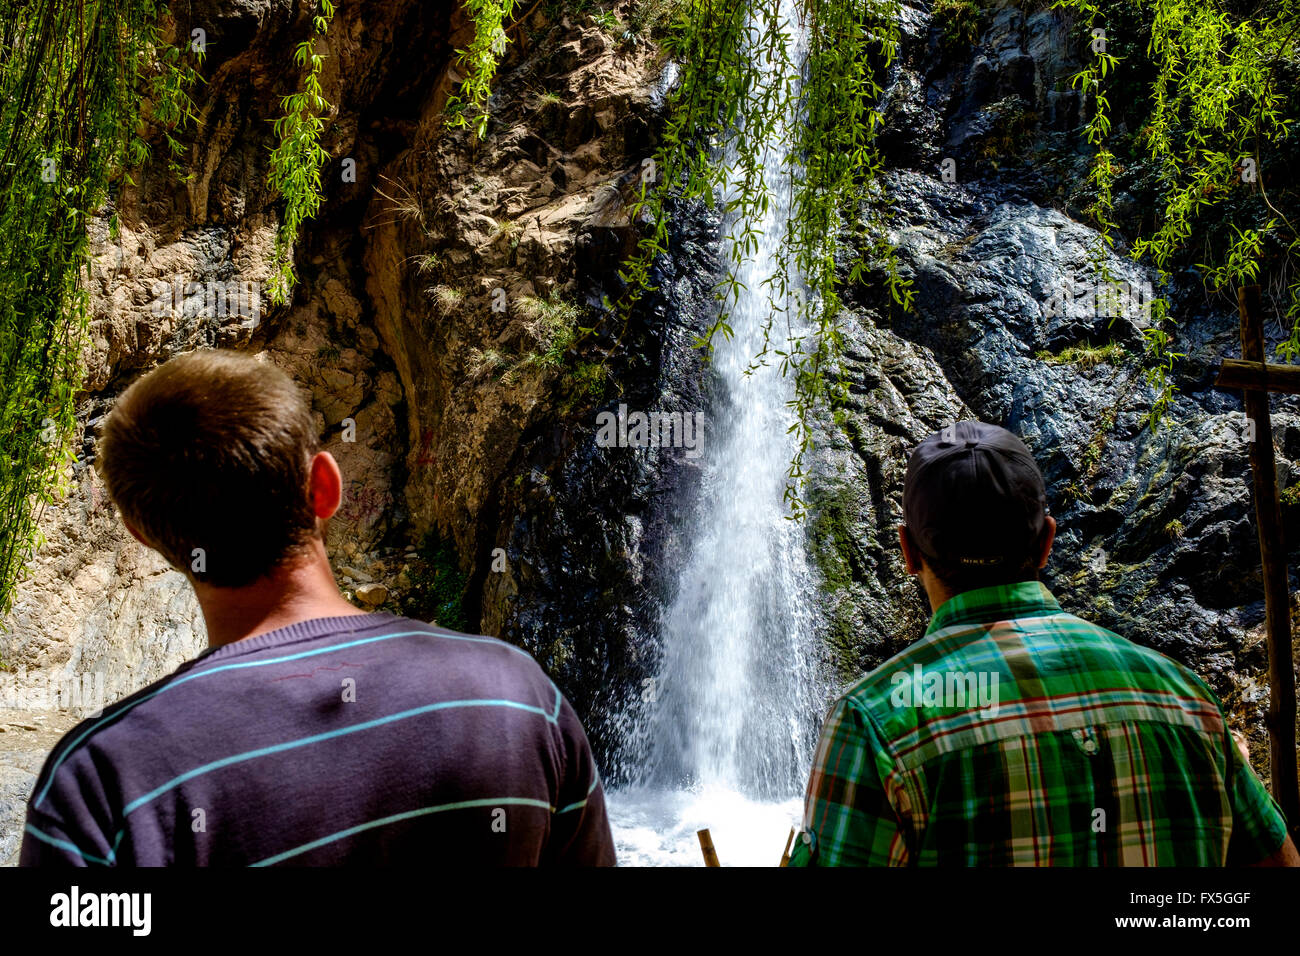 La cascade de Setti-Fatma (Cascades de Setti Fatma ou Ourika Cascades) dans la vallée de l'Ourika, Maroc, Afrique du Nord Banque D'Images